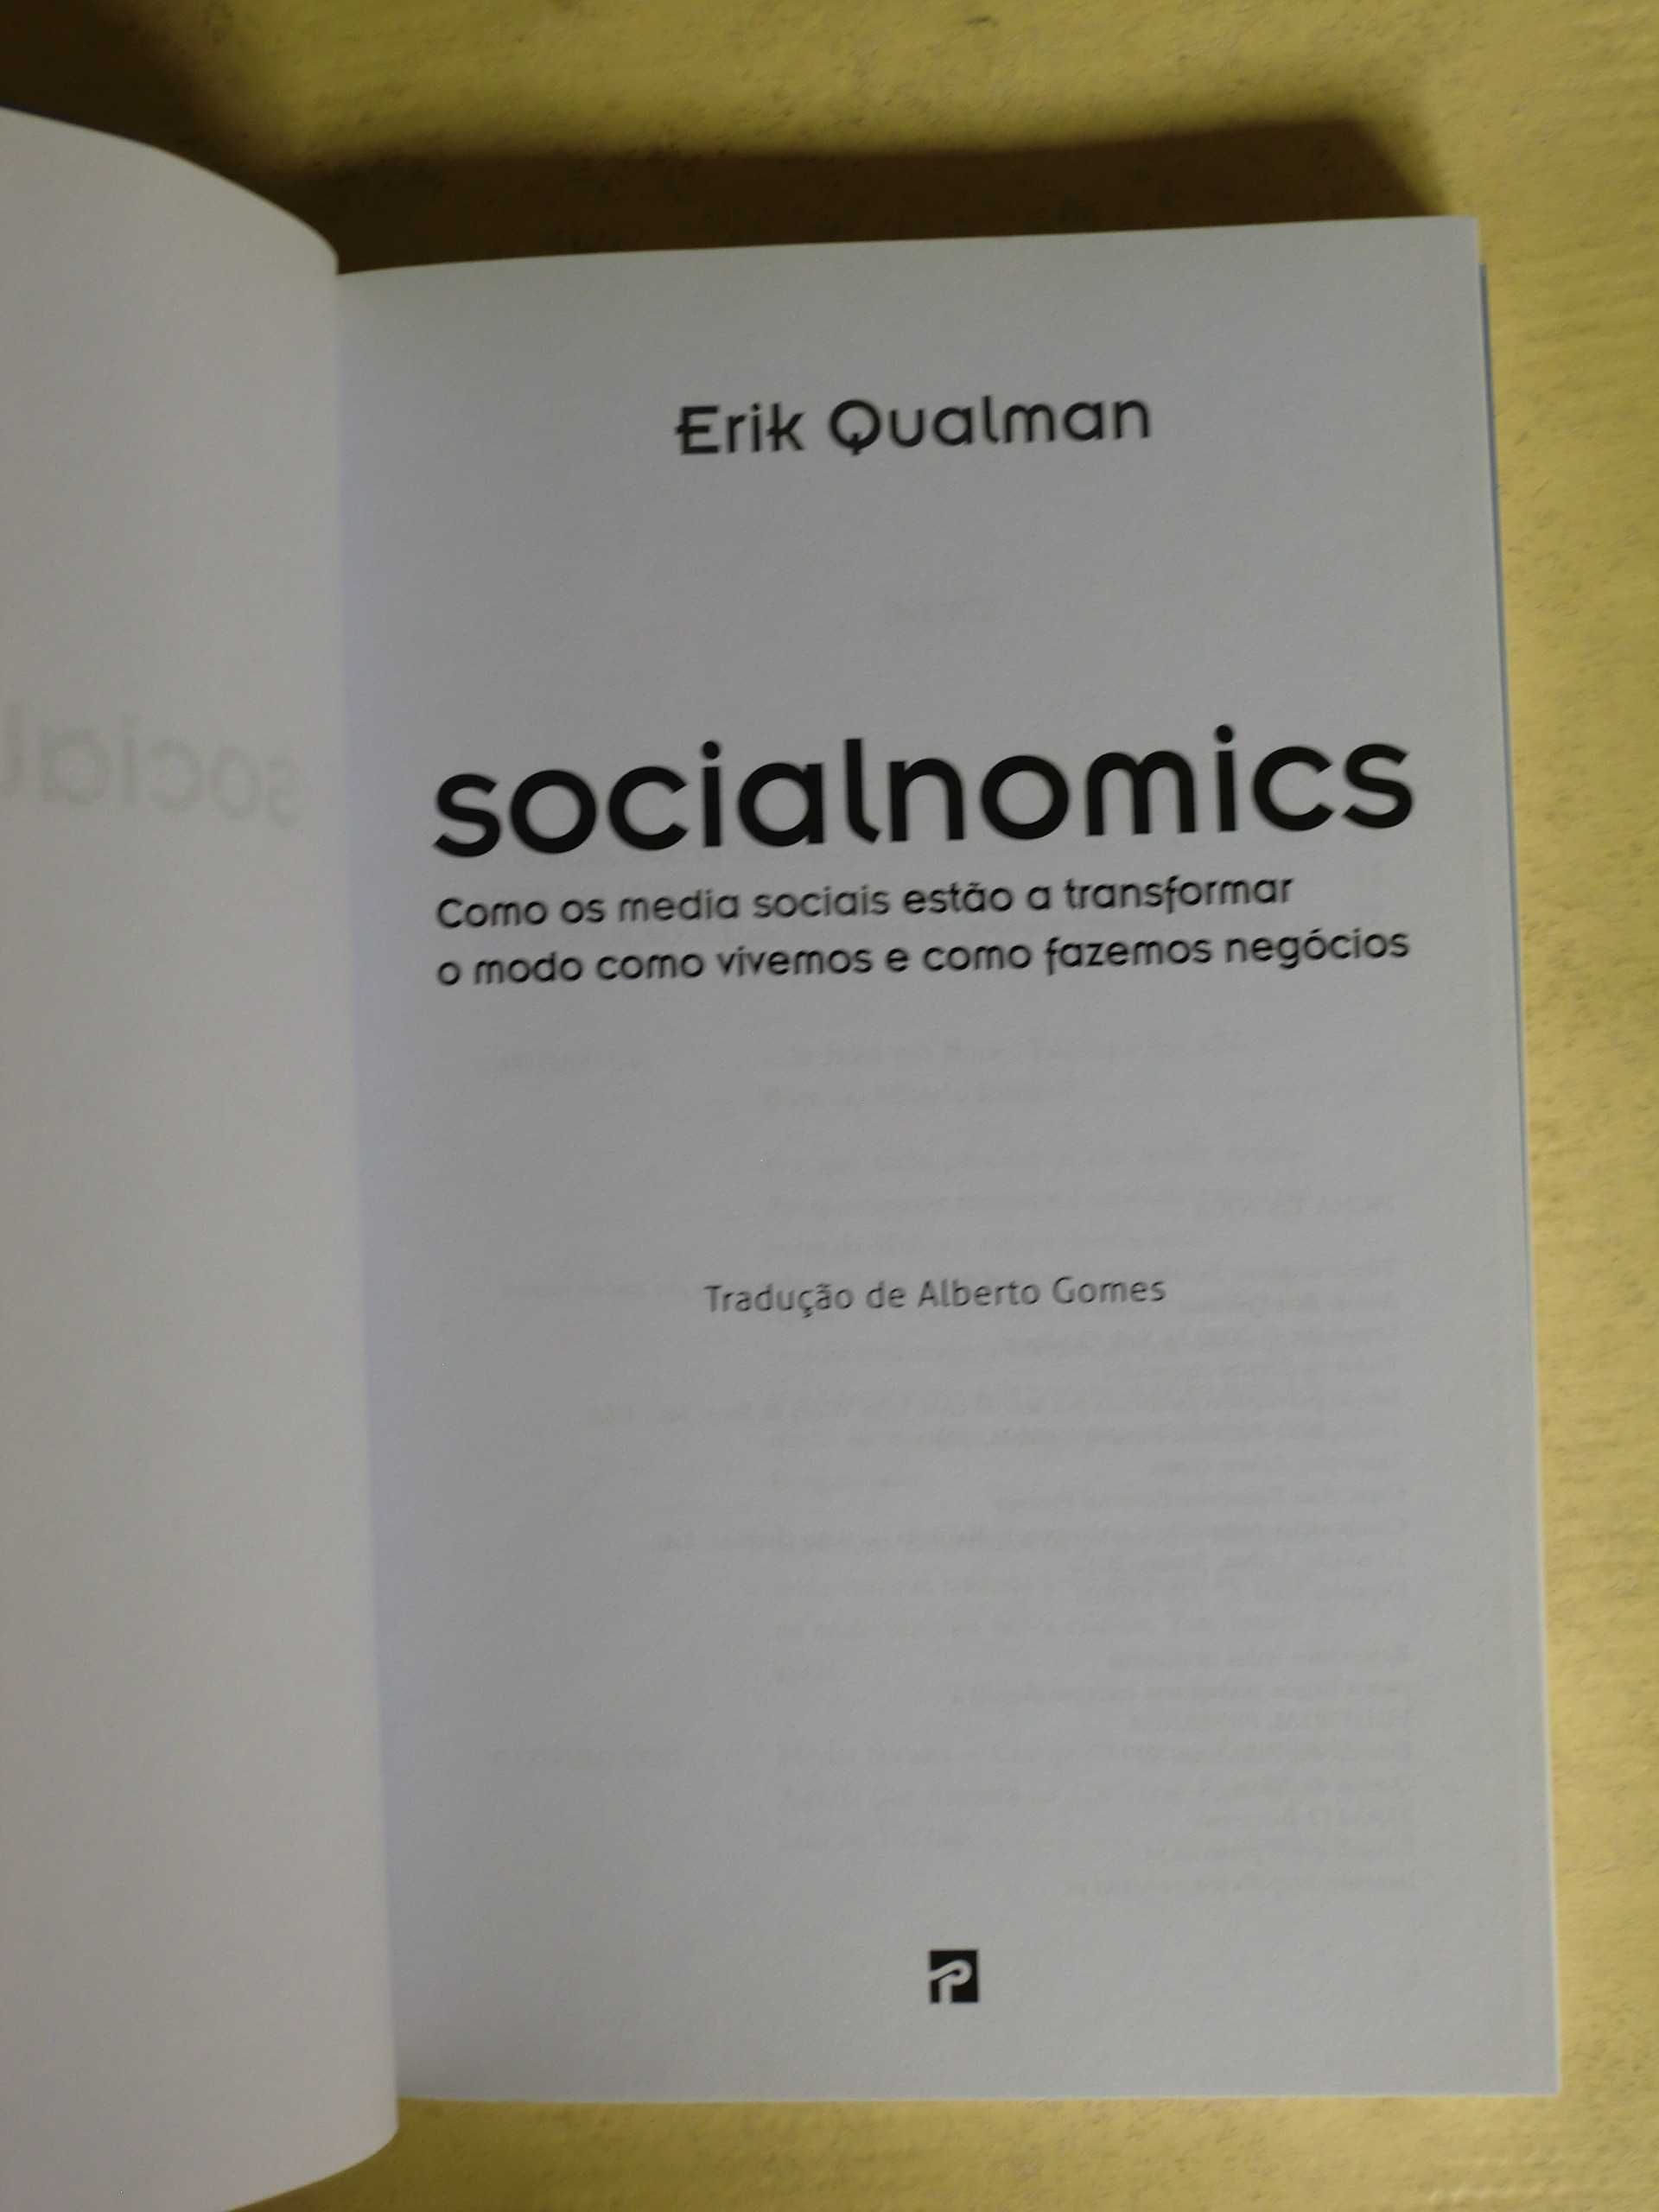 Socialnomics
de Erik Qualman